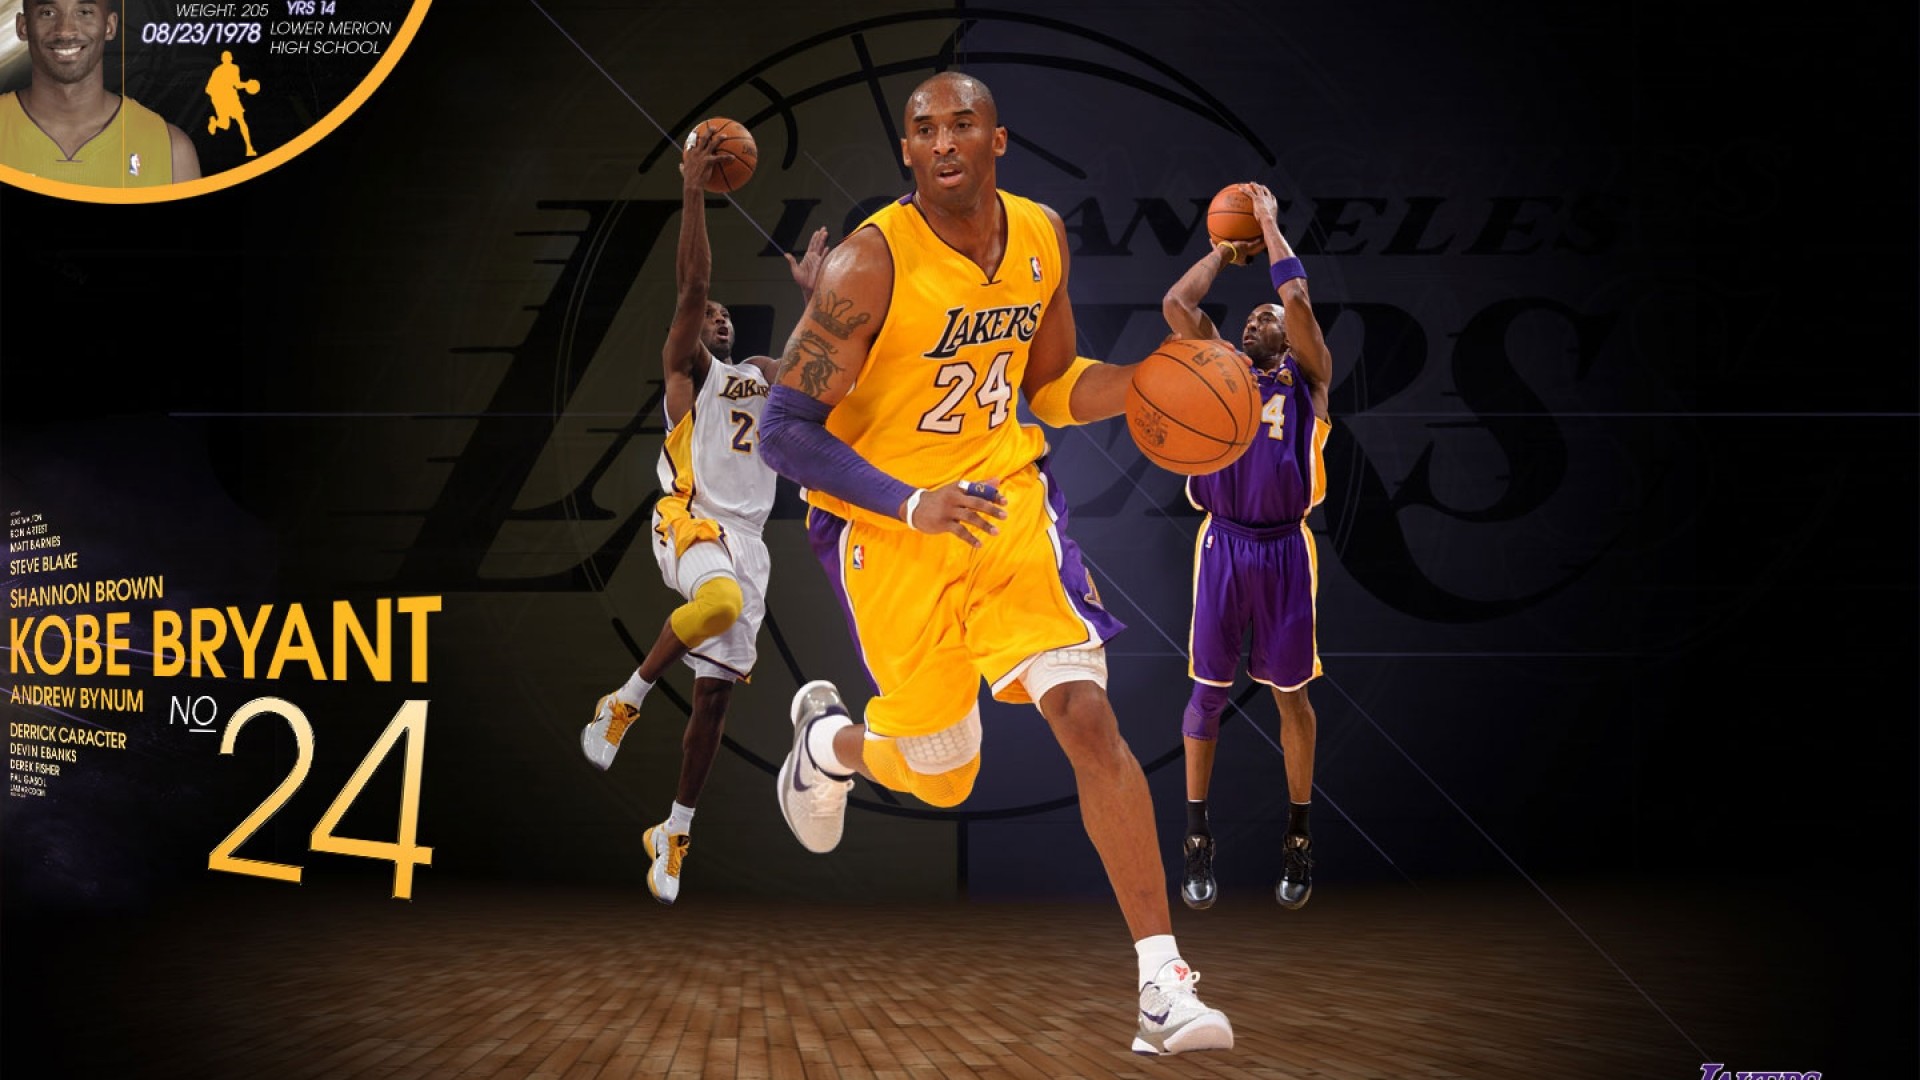 1920x1080 Kobe Bryant Lakers 2012 wallpaper